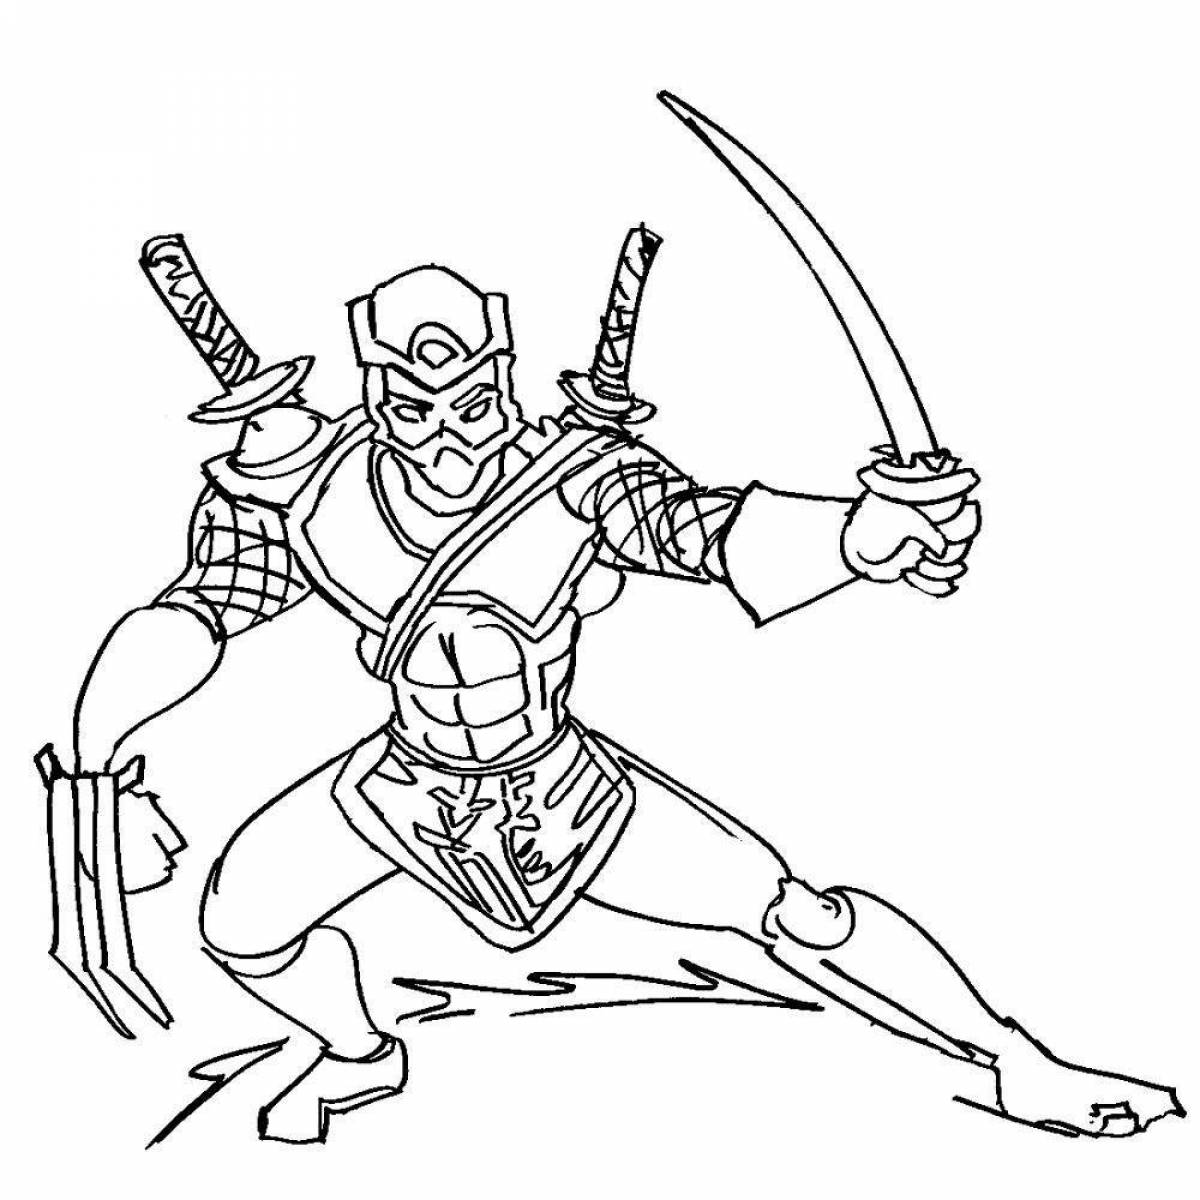 Ninja coloring page for boys